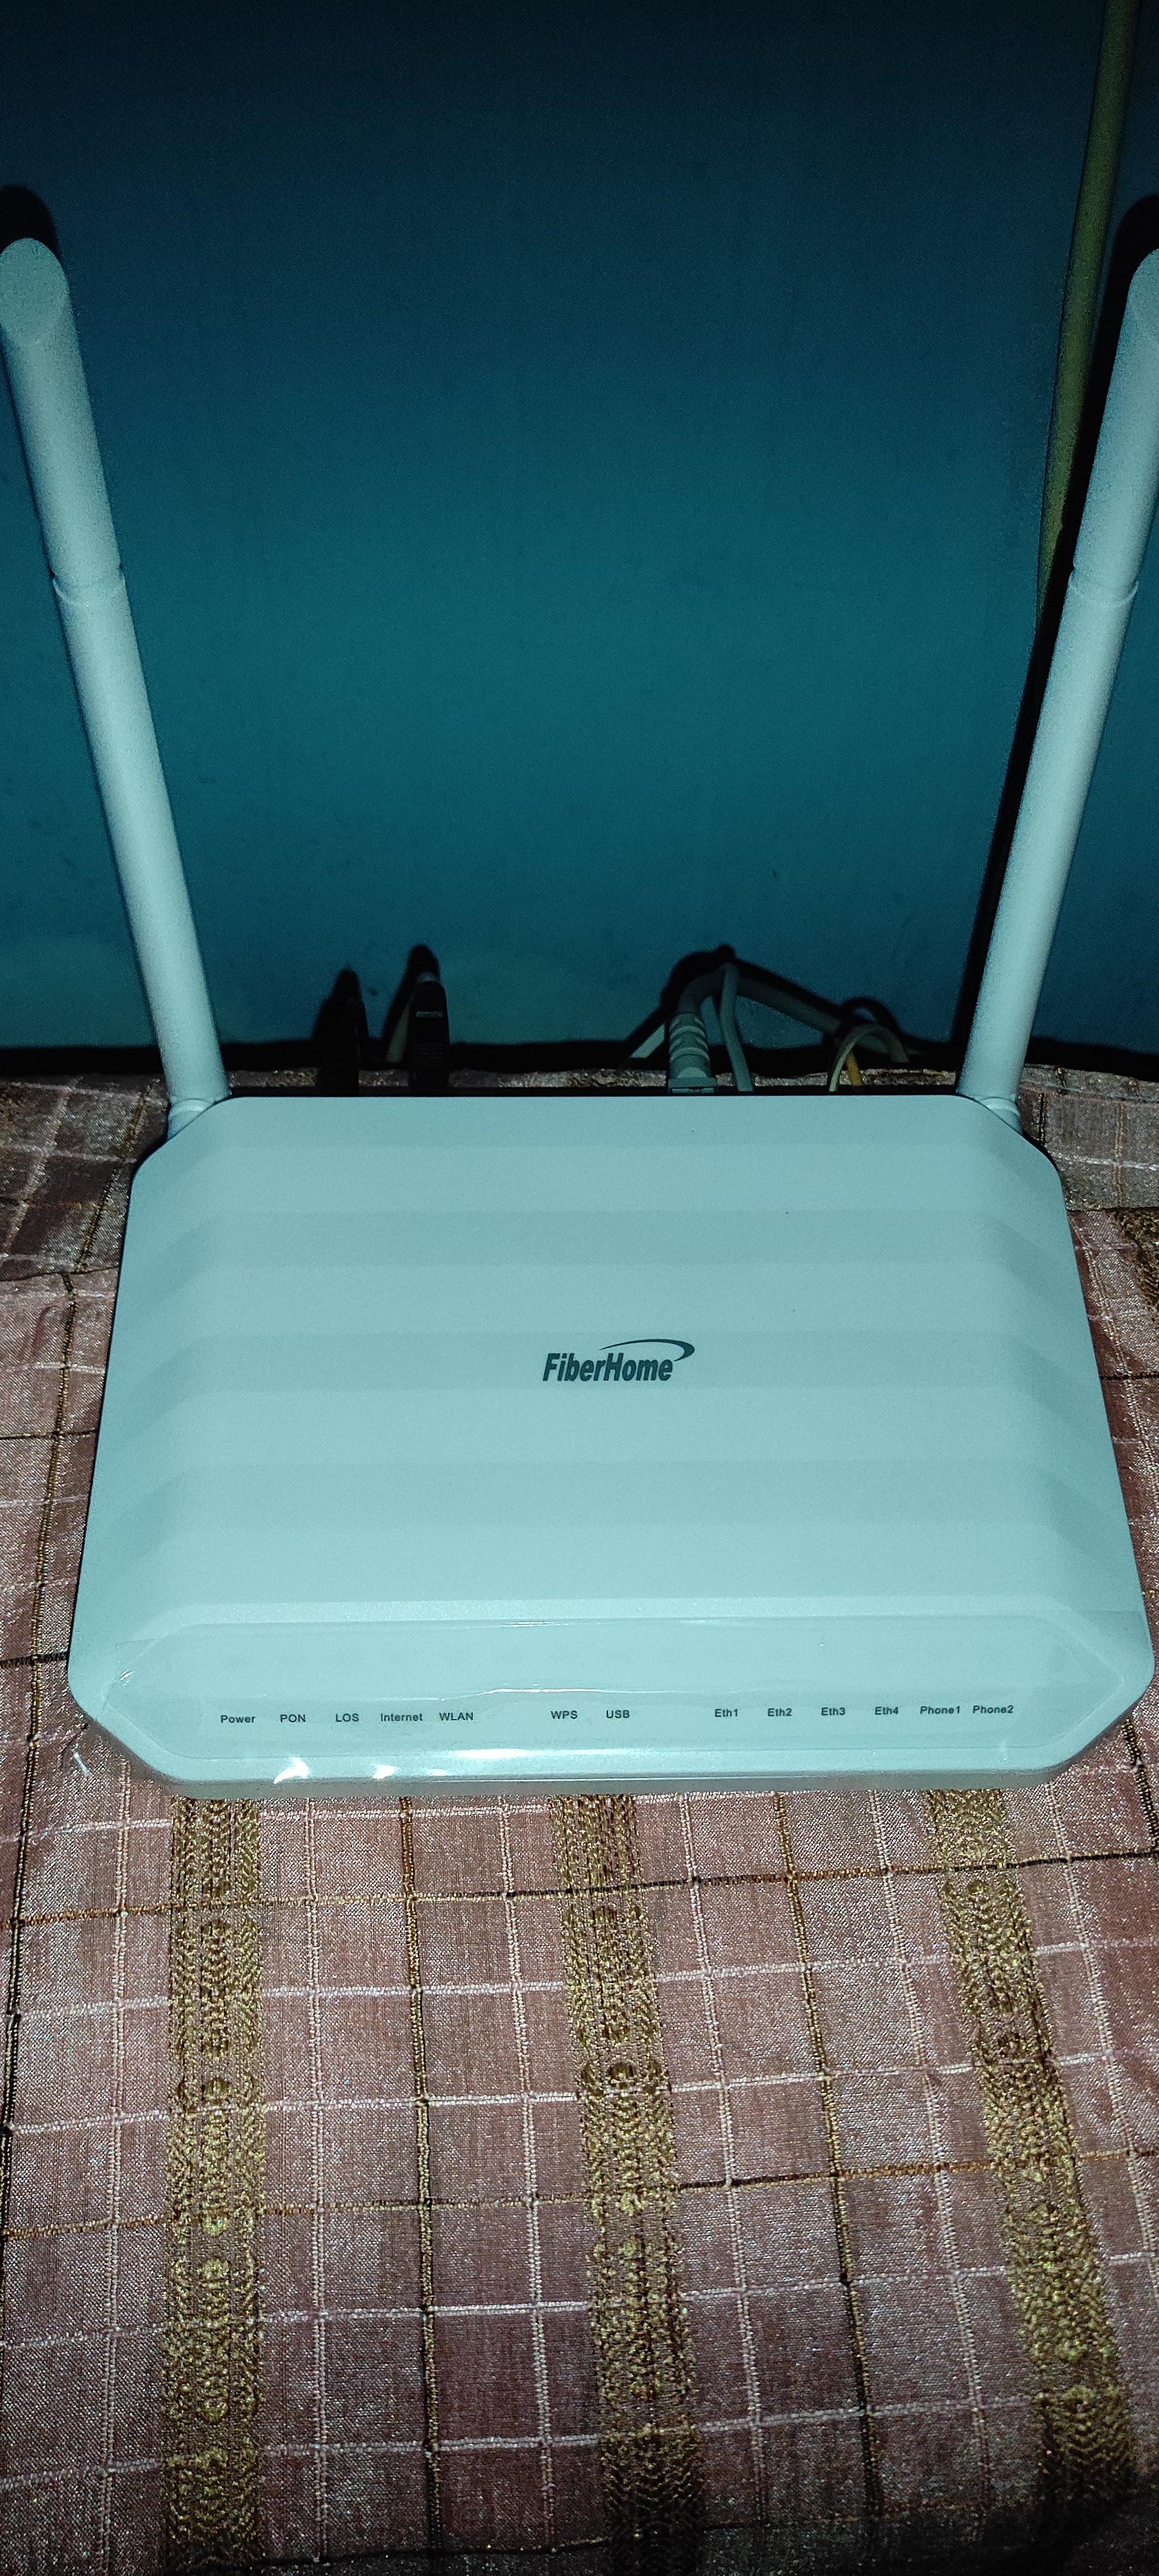 Fiberhome router